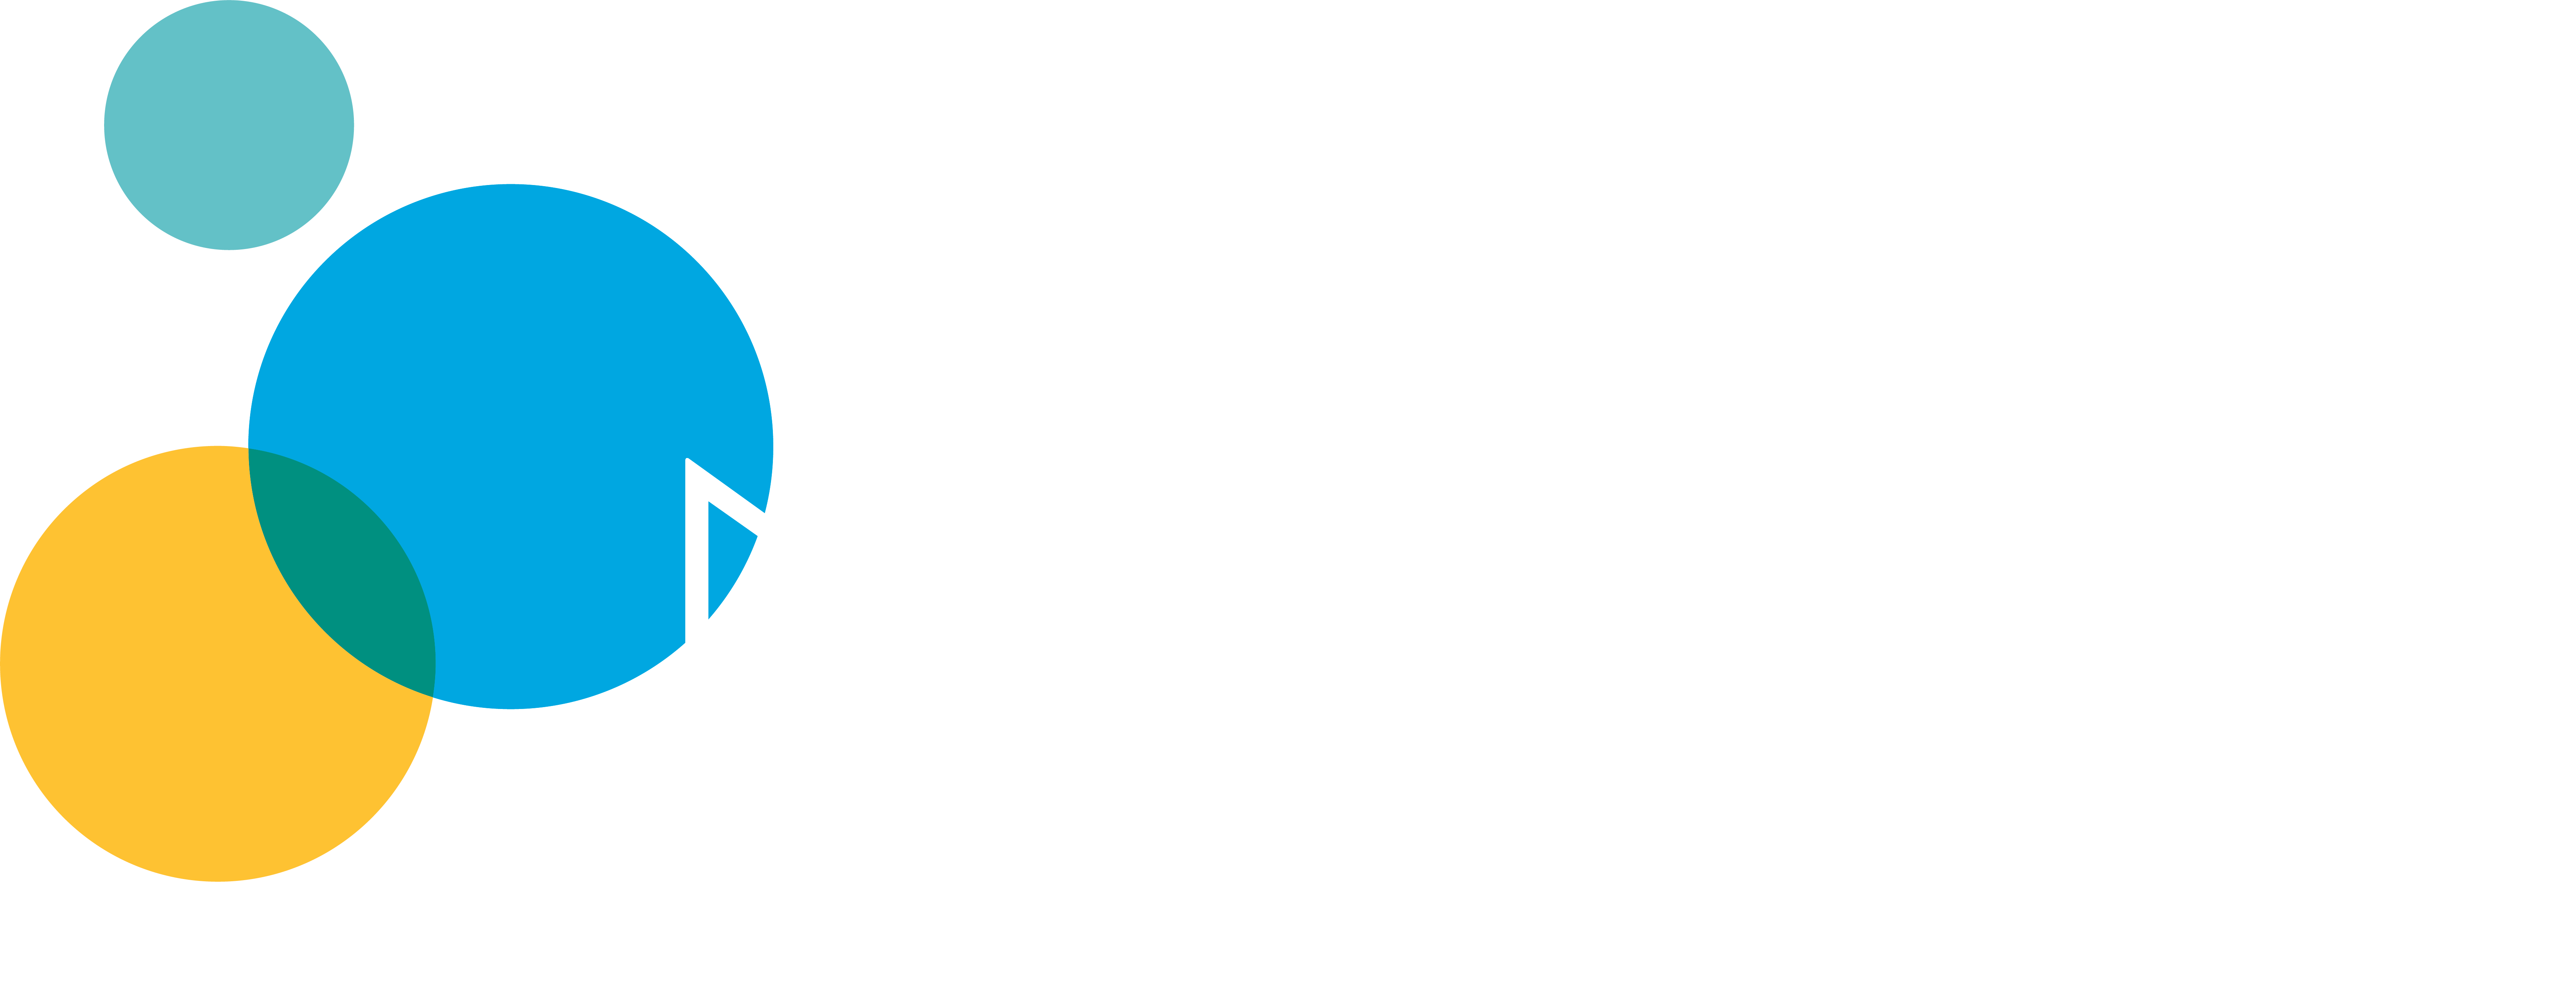 Newport Classical